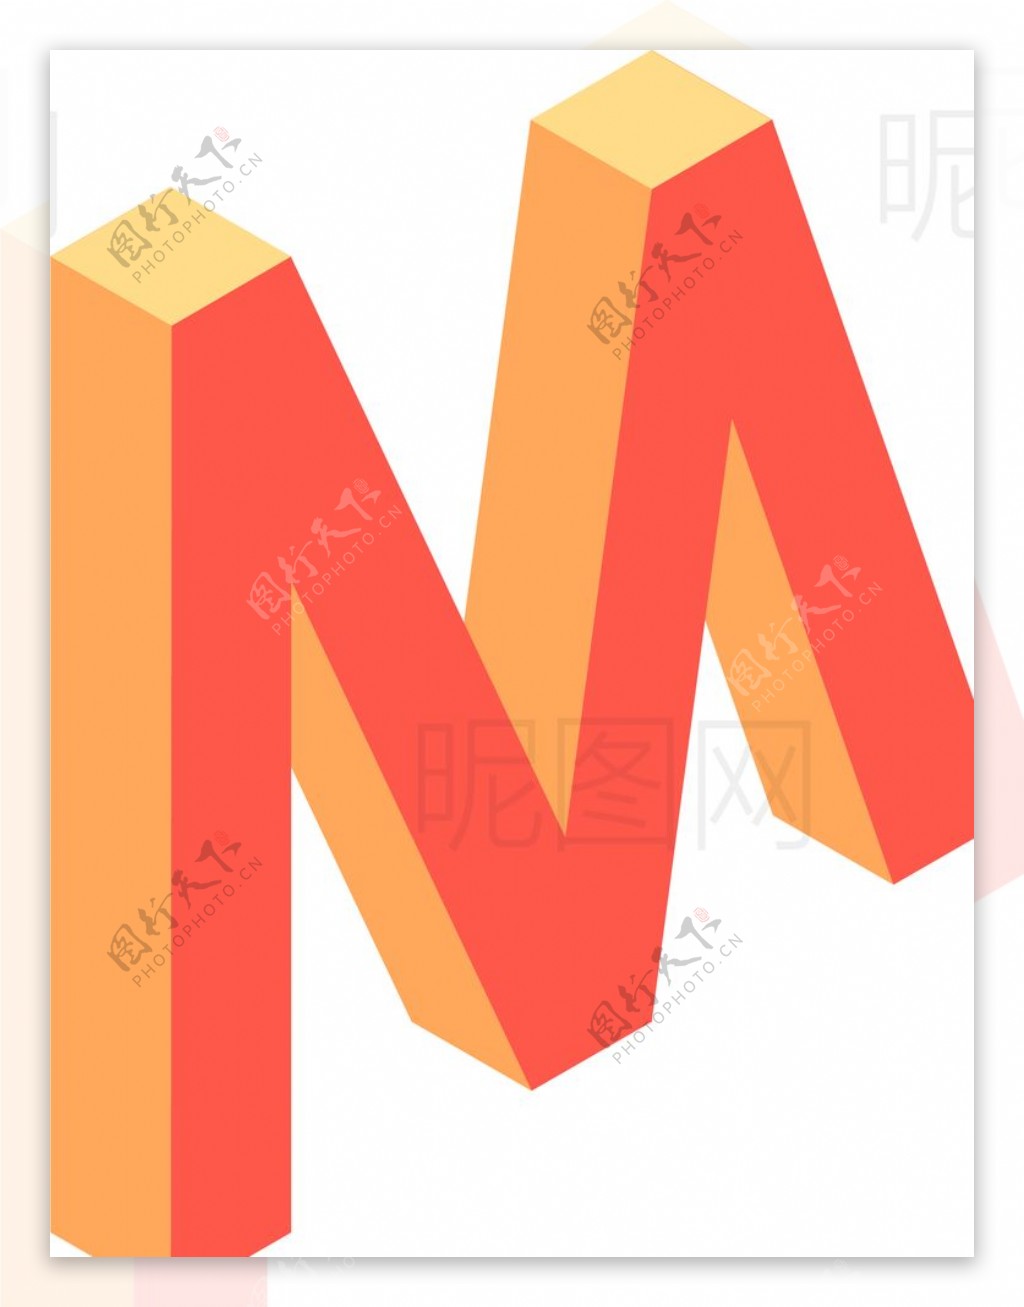 字母M图片